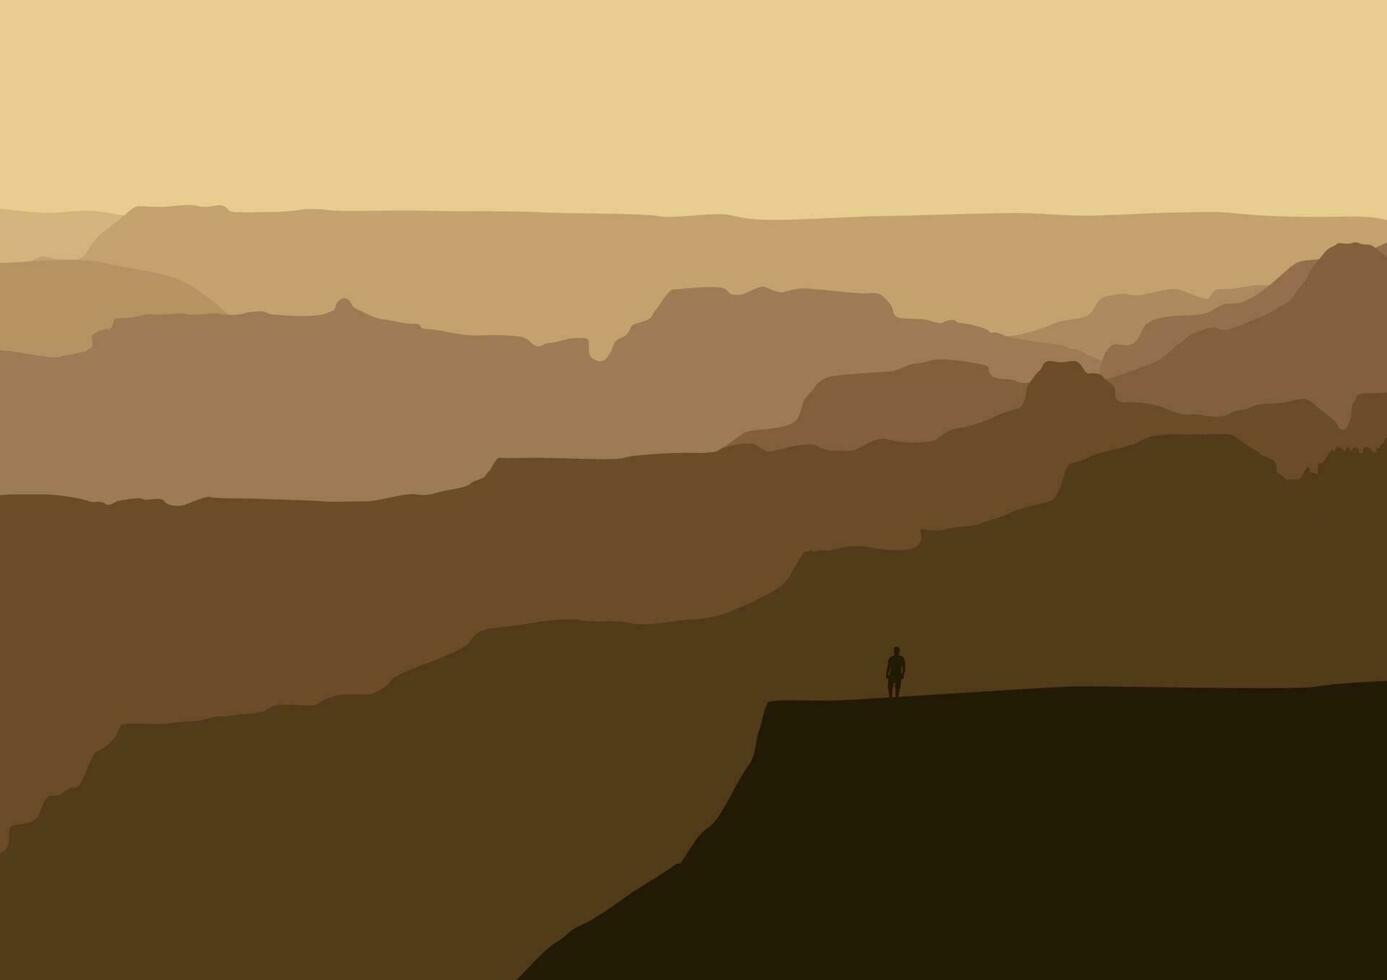 berg landschap met Mens Aan klif kant. vector illustratie in vlak stijl.